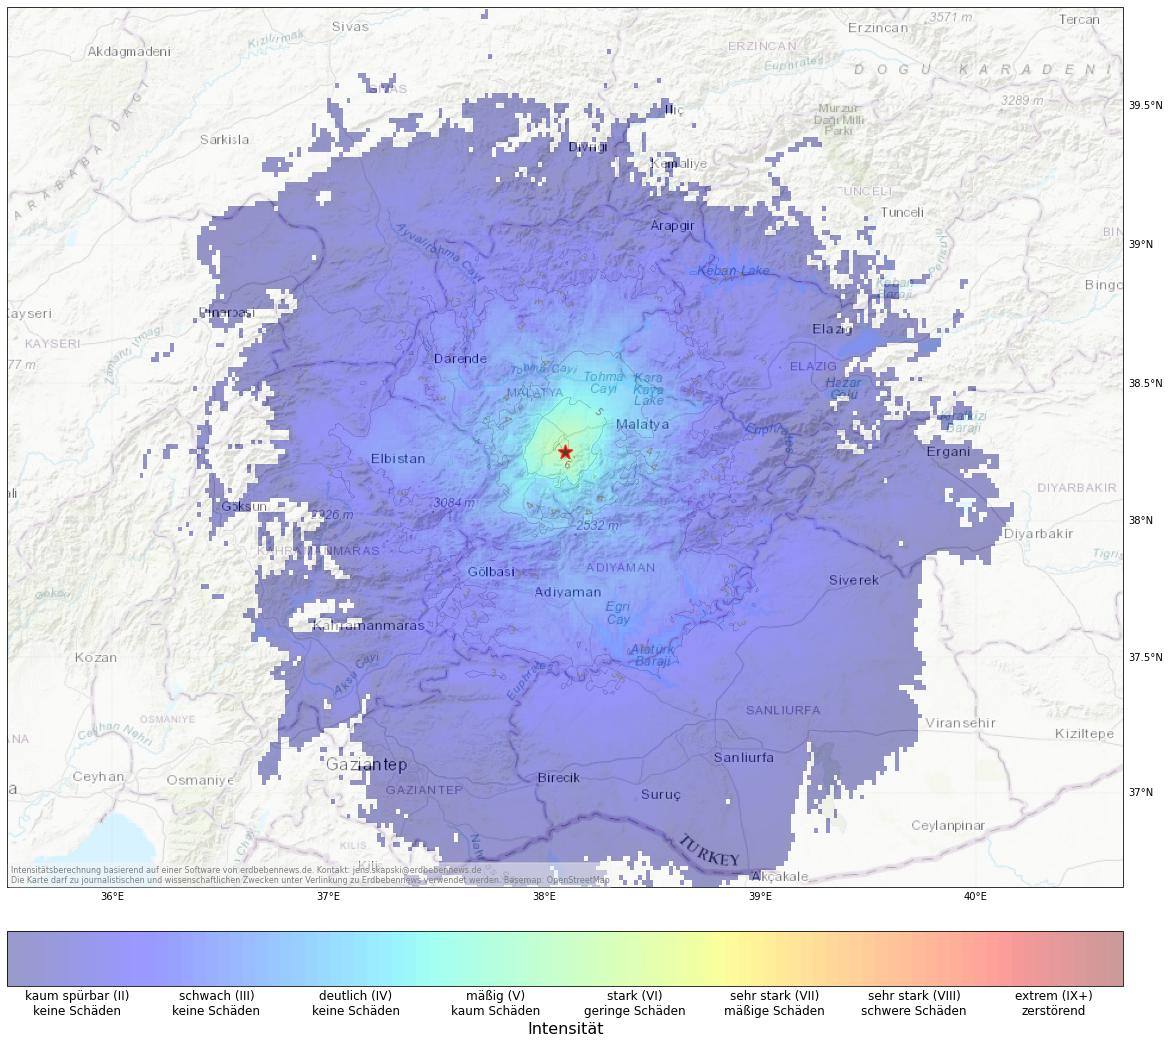 Berechnete Intensität (ShakeMap) des Erdbebens der Stärke 4.7 am 28. Dezember, 10:34 Uhr in Türkei